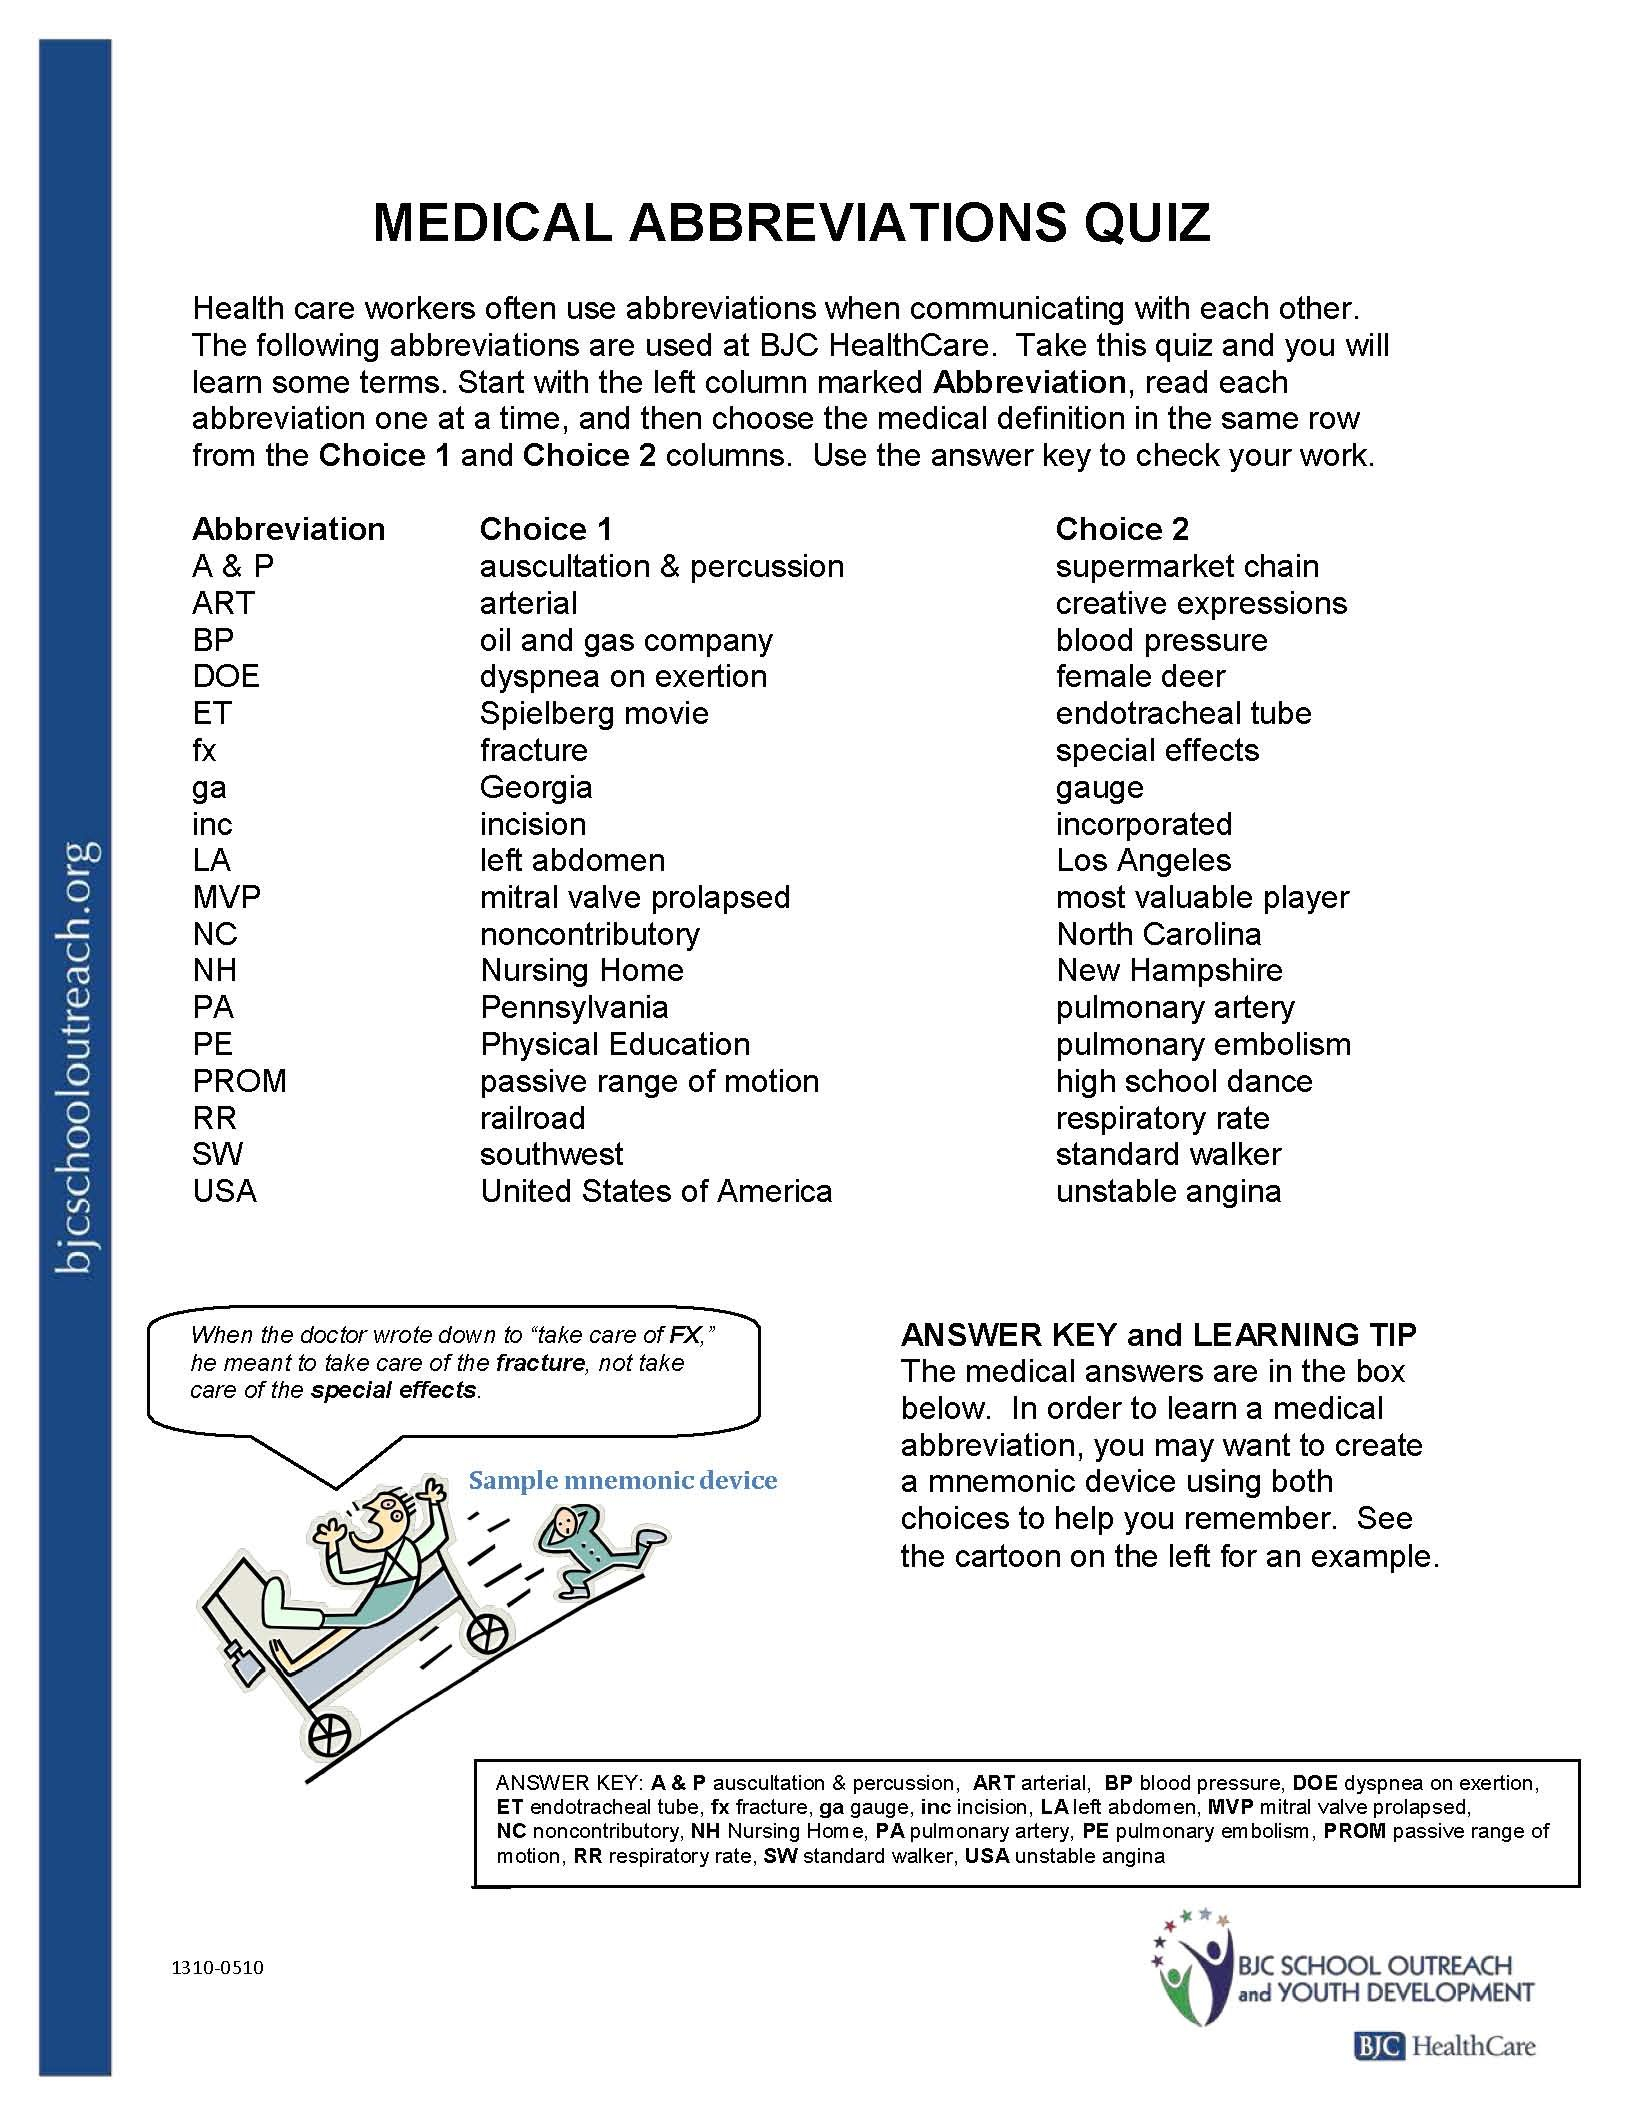 Printable Worksheets For Understanding Stds Worksheet Health Smart